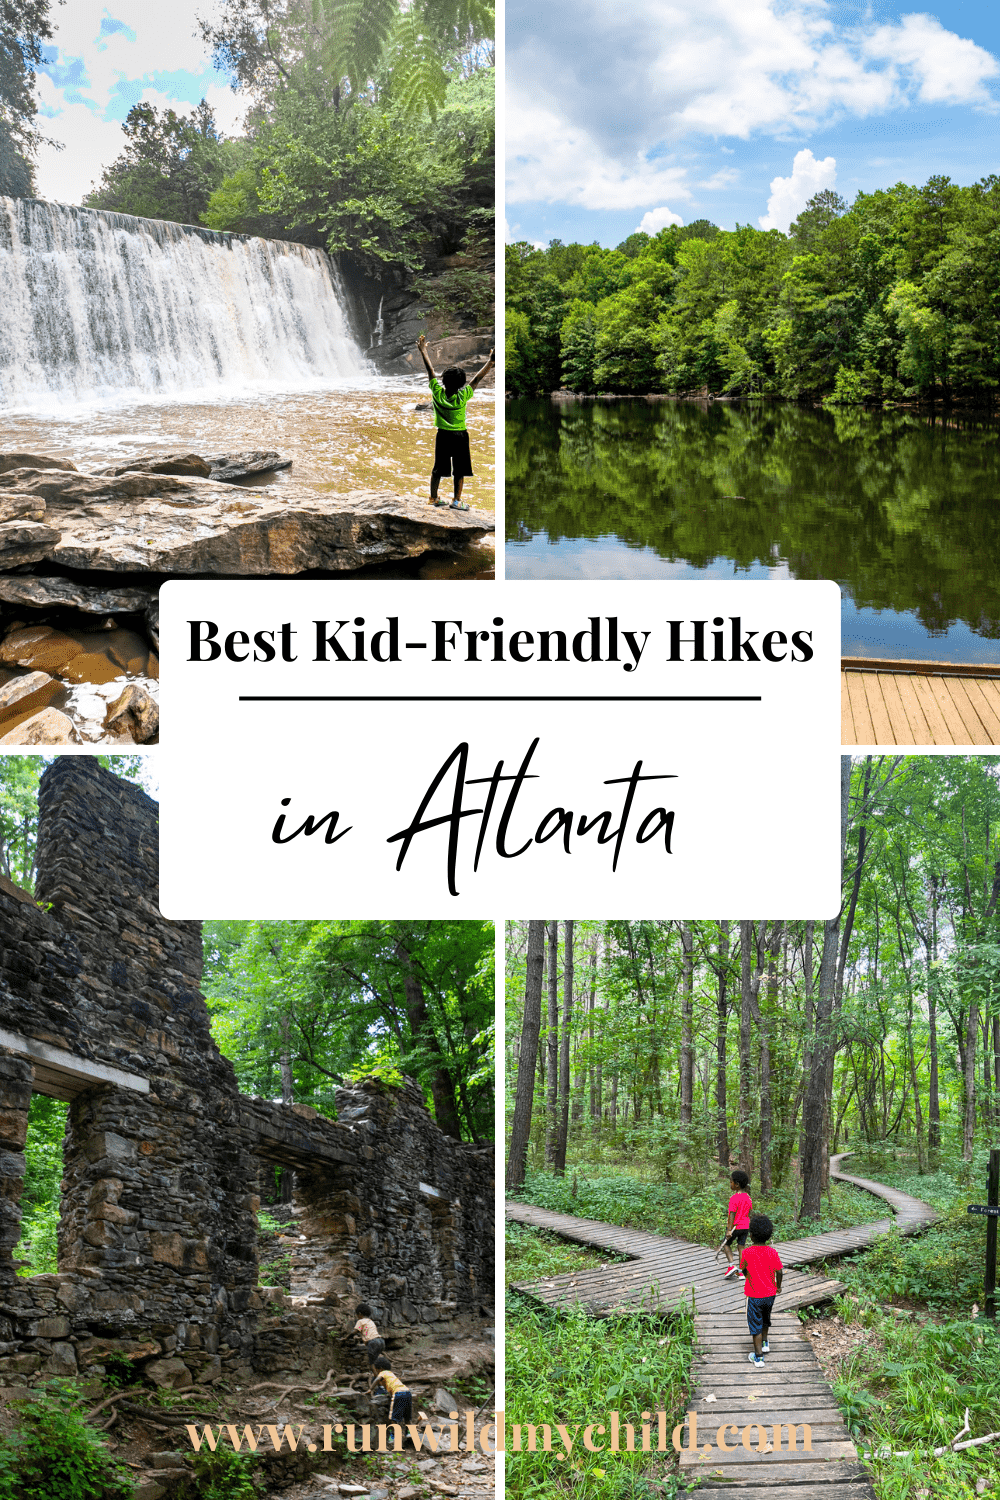 Best kid-friendly hikes in Atlanta 